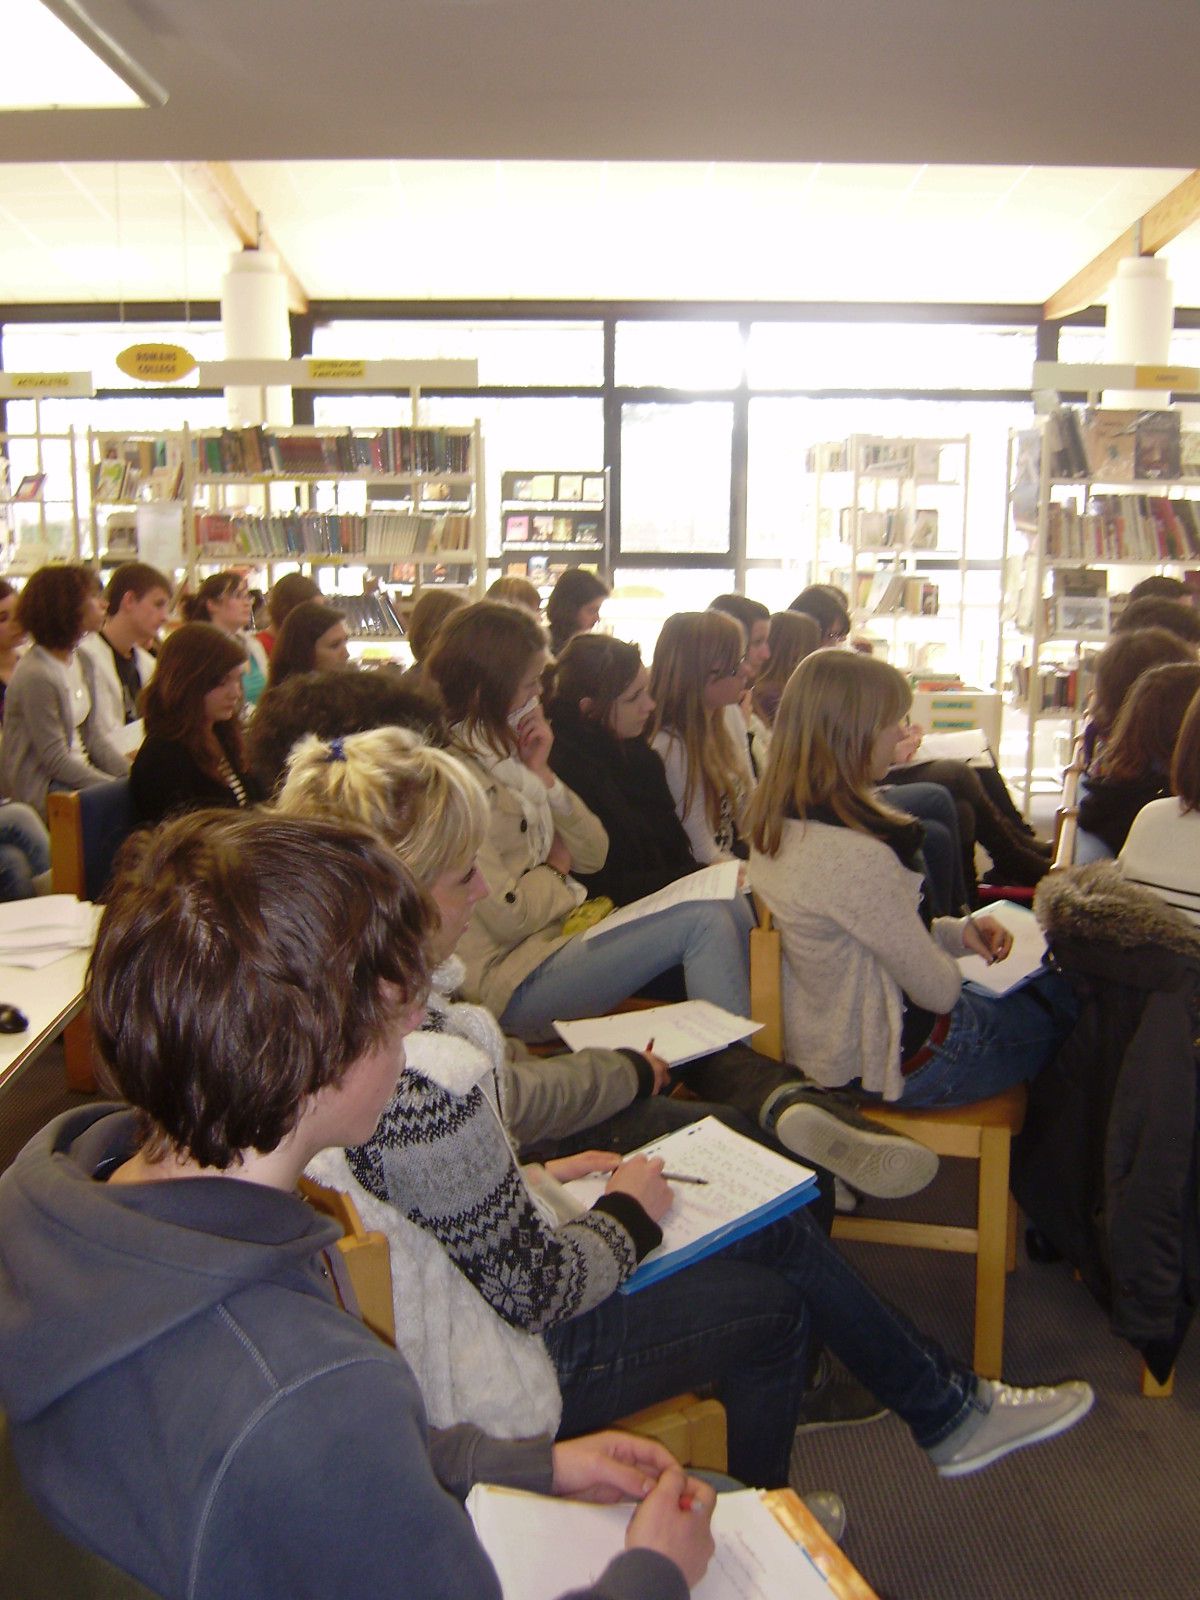 Le 20-01-11, au CDI du Lycée de l'Iroise, les lycéens d'i-voix ont rencontré l'écrivain JERÔME LEROY, auteur du recueil Un dernier verre en Atlantide.